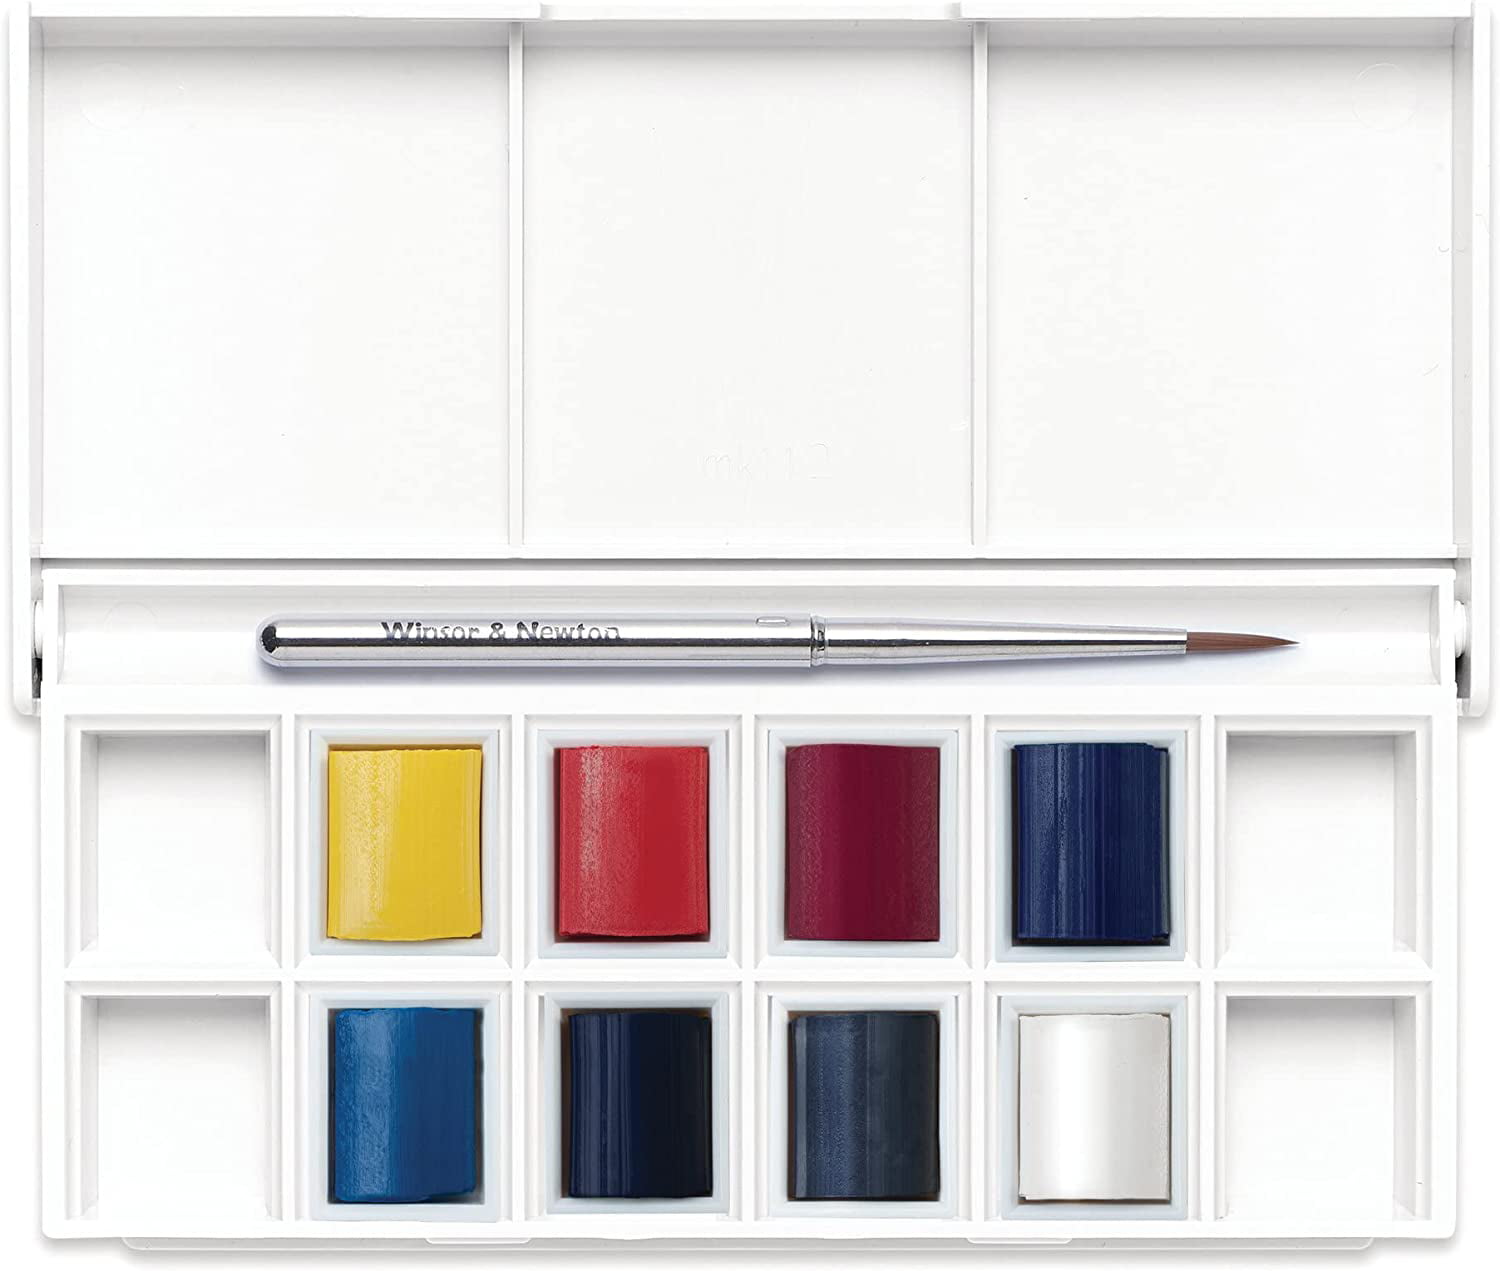 Cotman Watercolour Complete Pocket Set (16 Colors) (Winsor